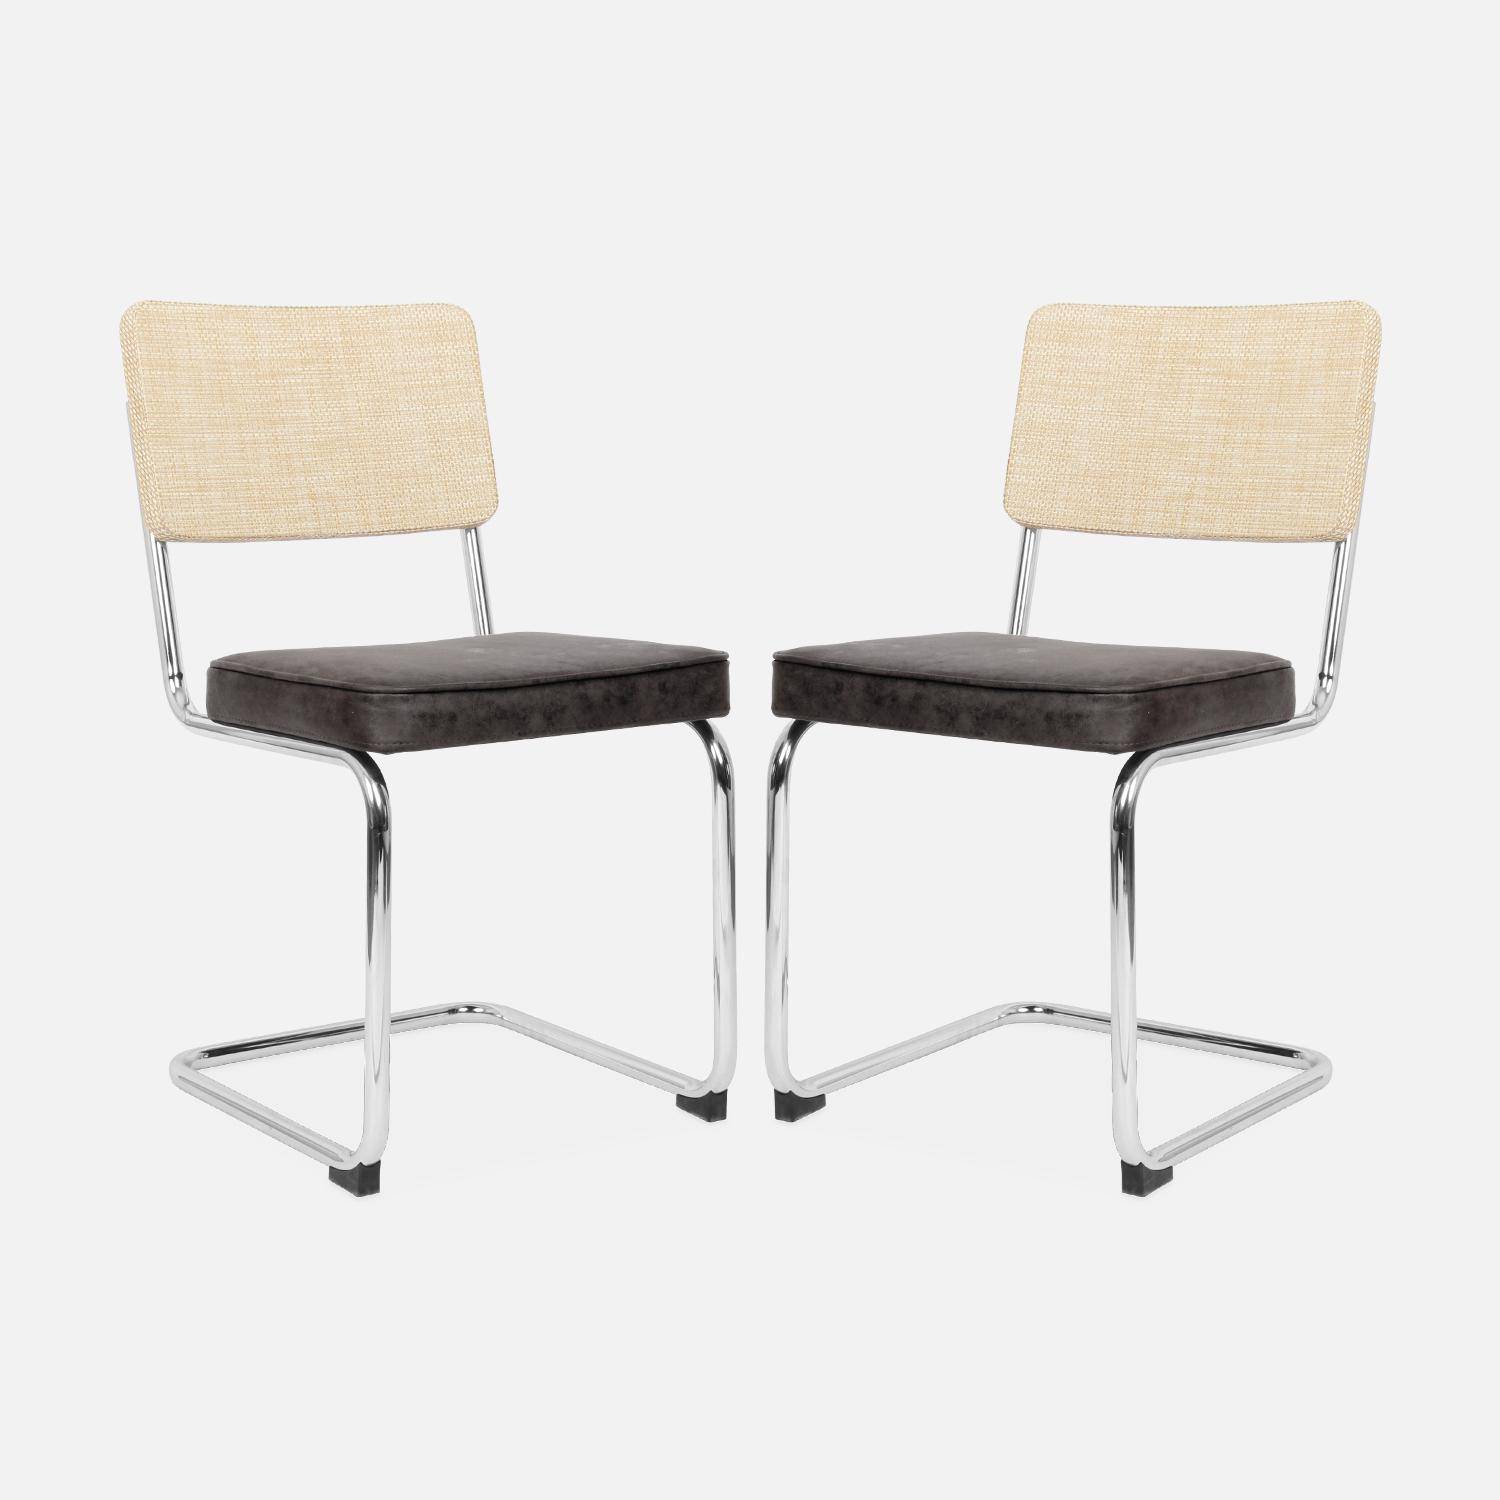 2 cadeiras cantilever - Maja - tecido preto e resina com efeito de vime, 46 x 54,5 x 84,5 cm Photo5